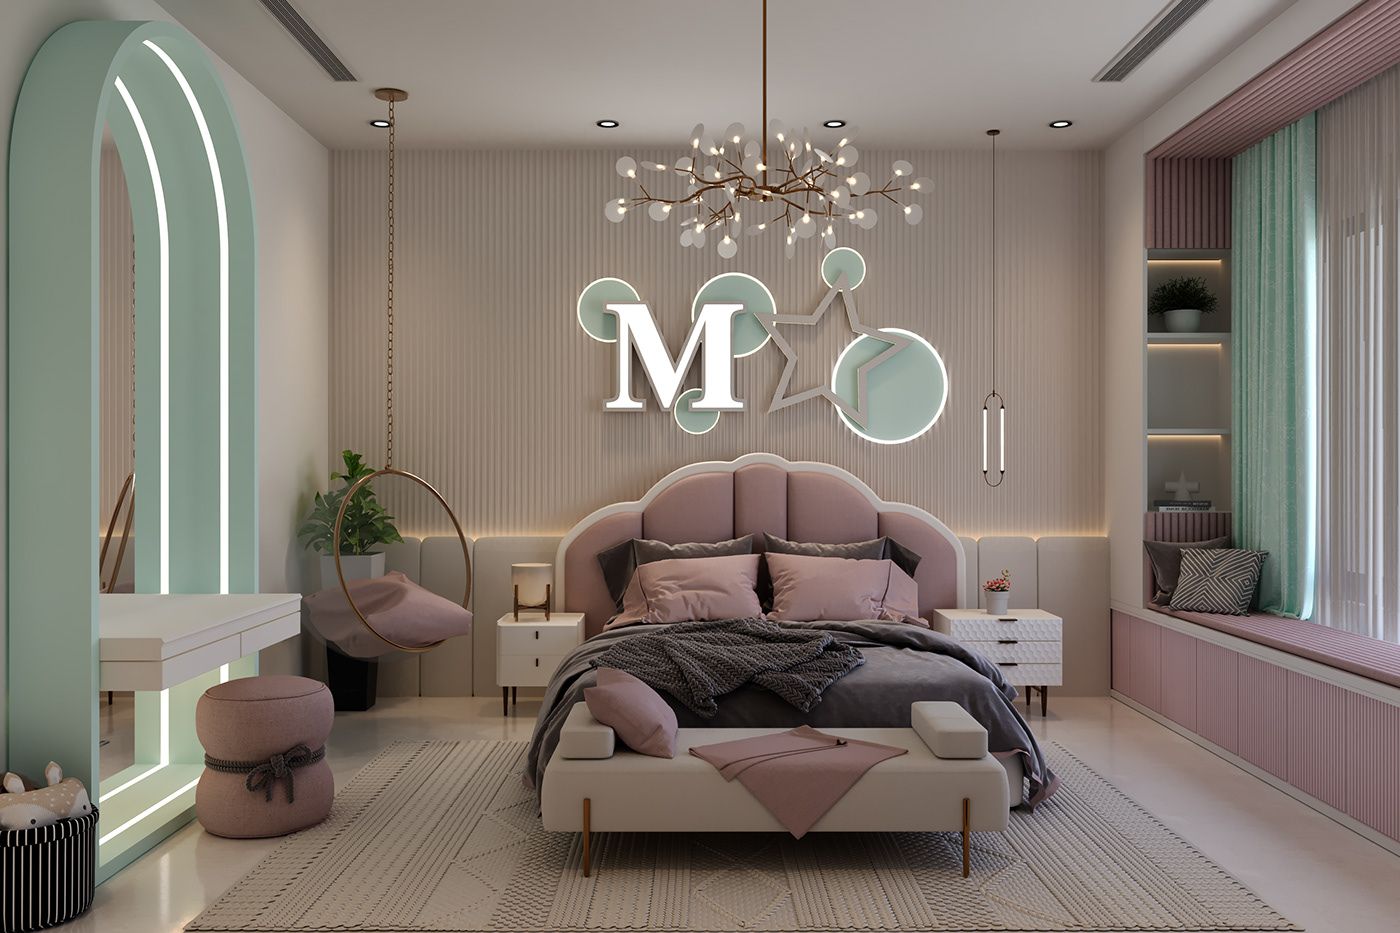 Phòng ngủ màu hồng đất thanh lịch phối thêm màu xanh pastel nhẹ nhàng